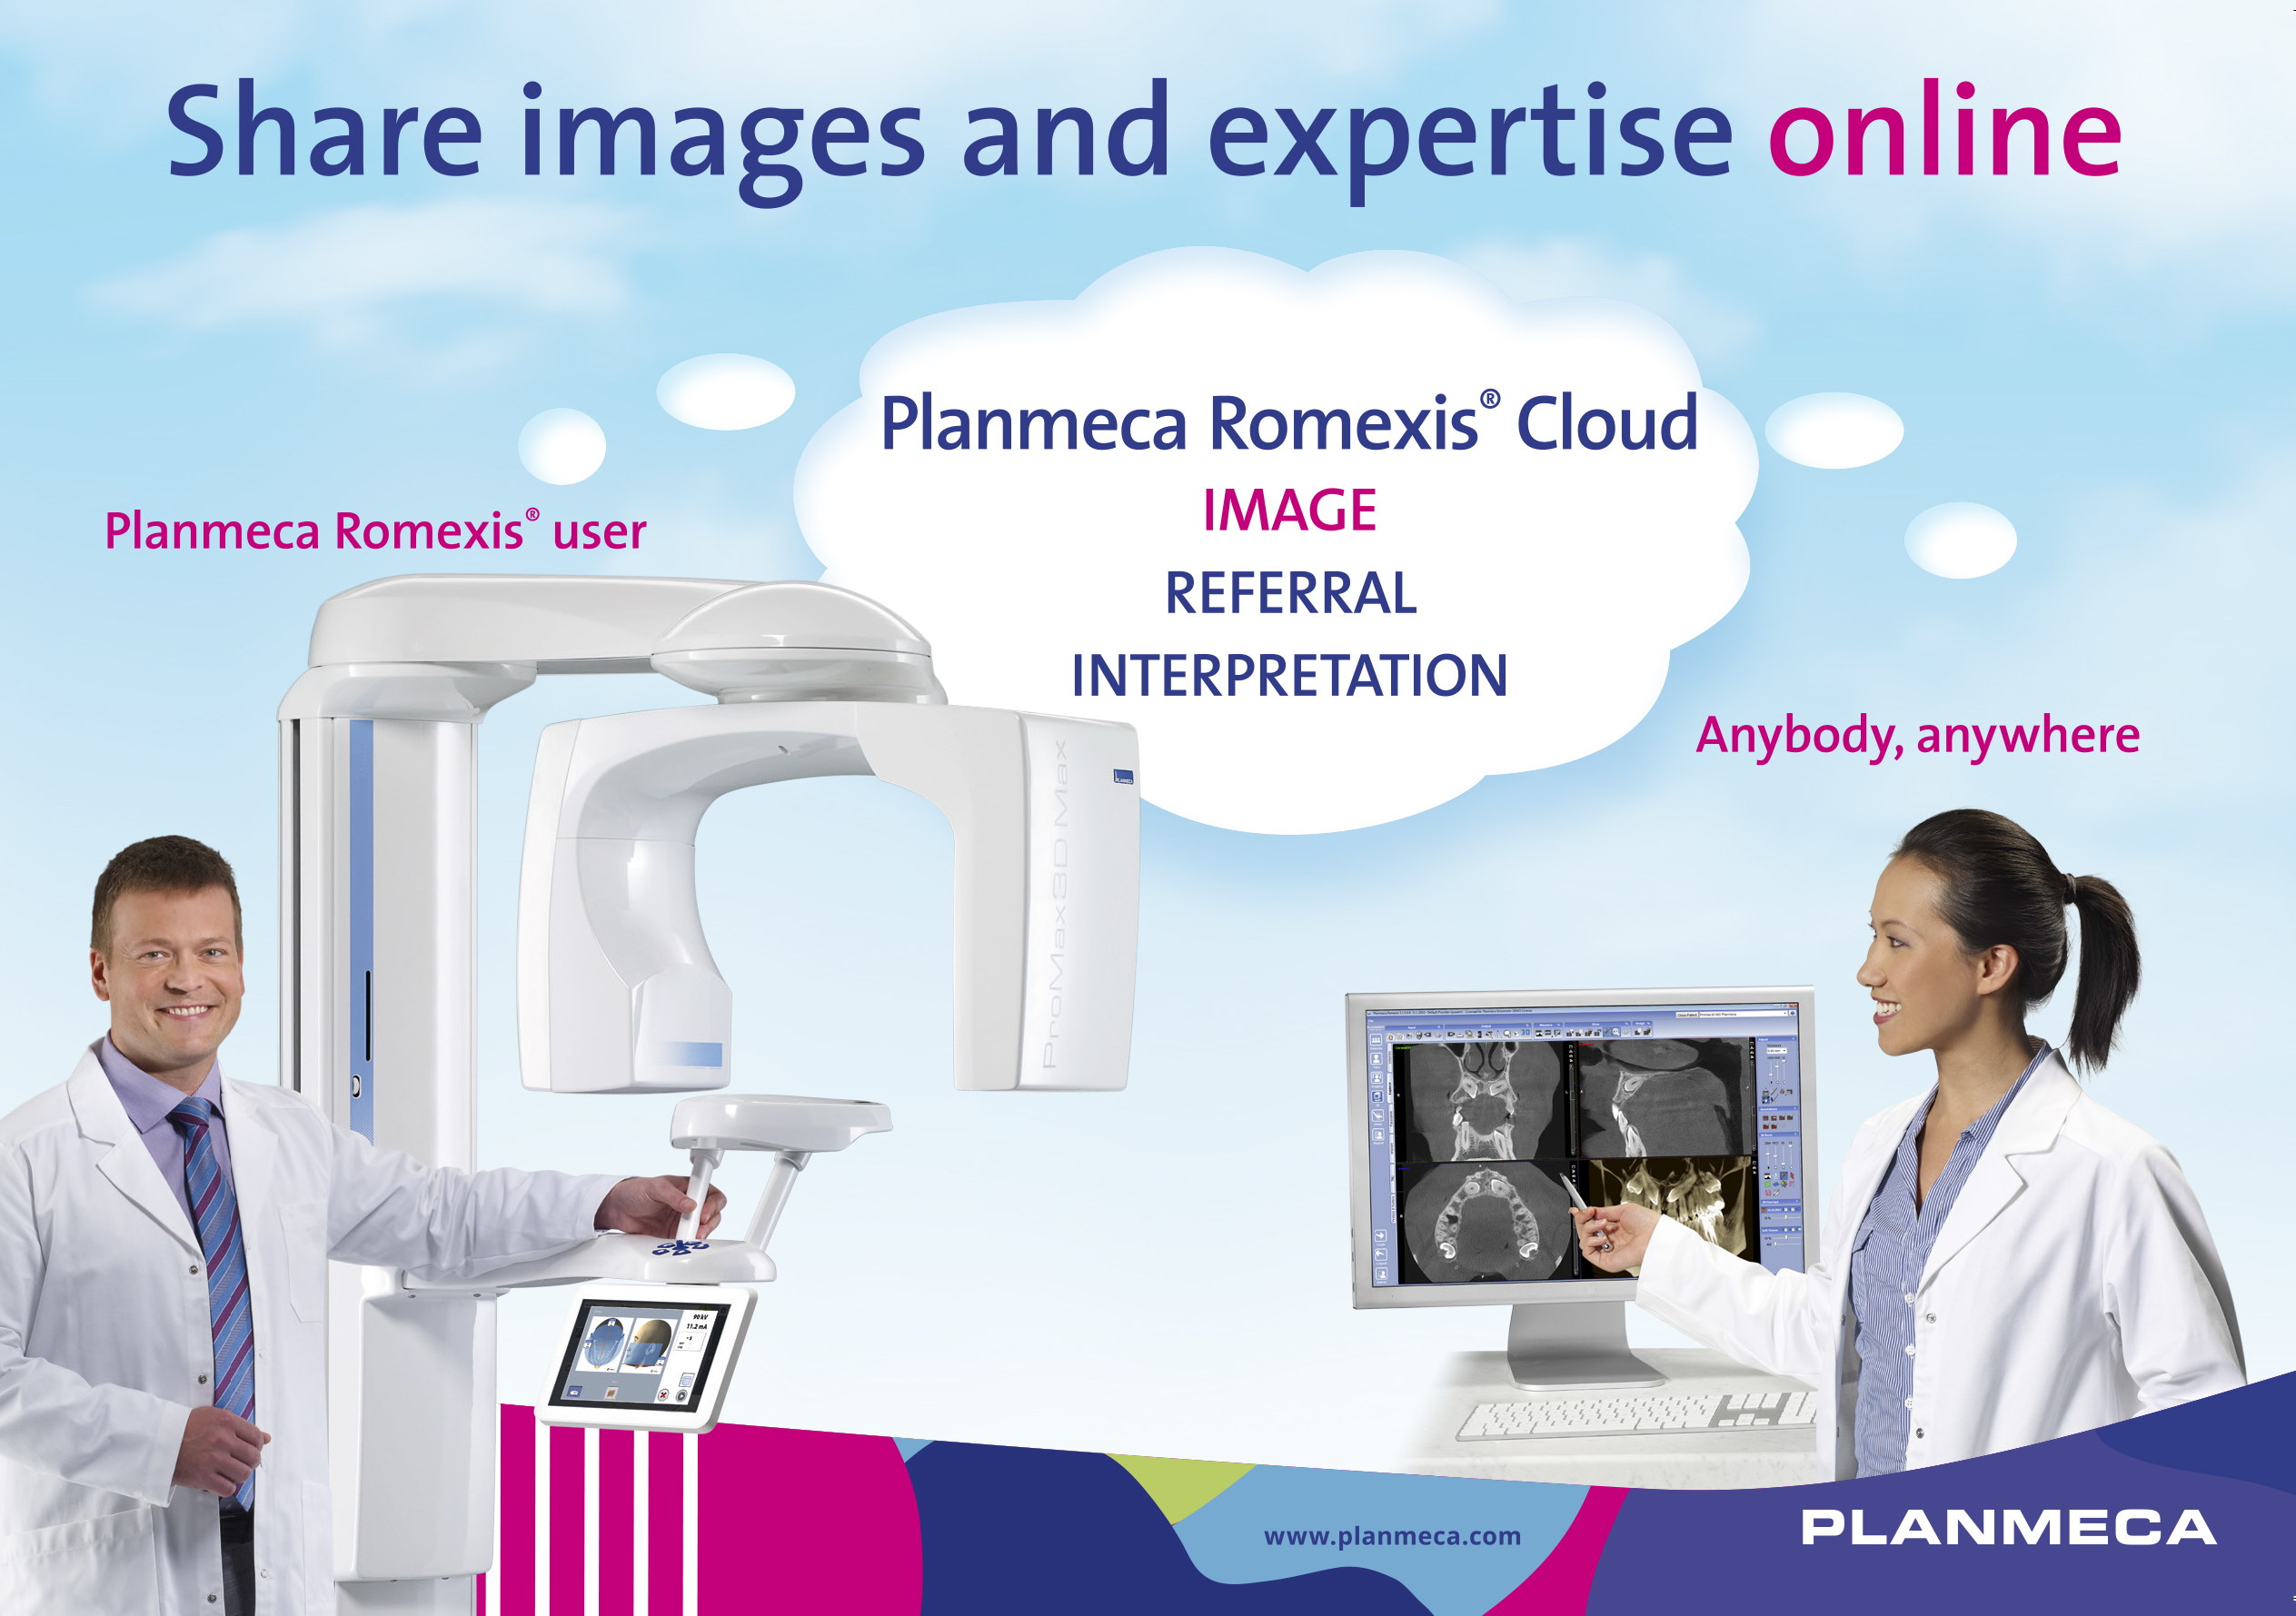 Uusi Planmeca Romexis® Cloud -palvelu kuvien helppoon jakamiseen ammattilaisten kesken